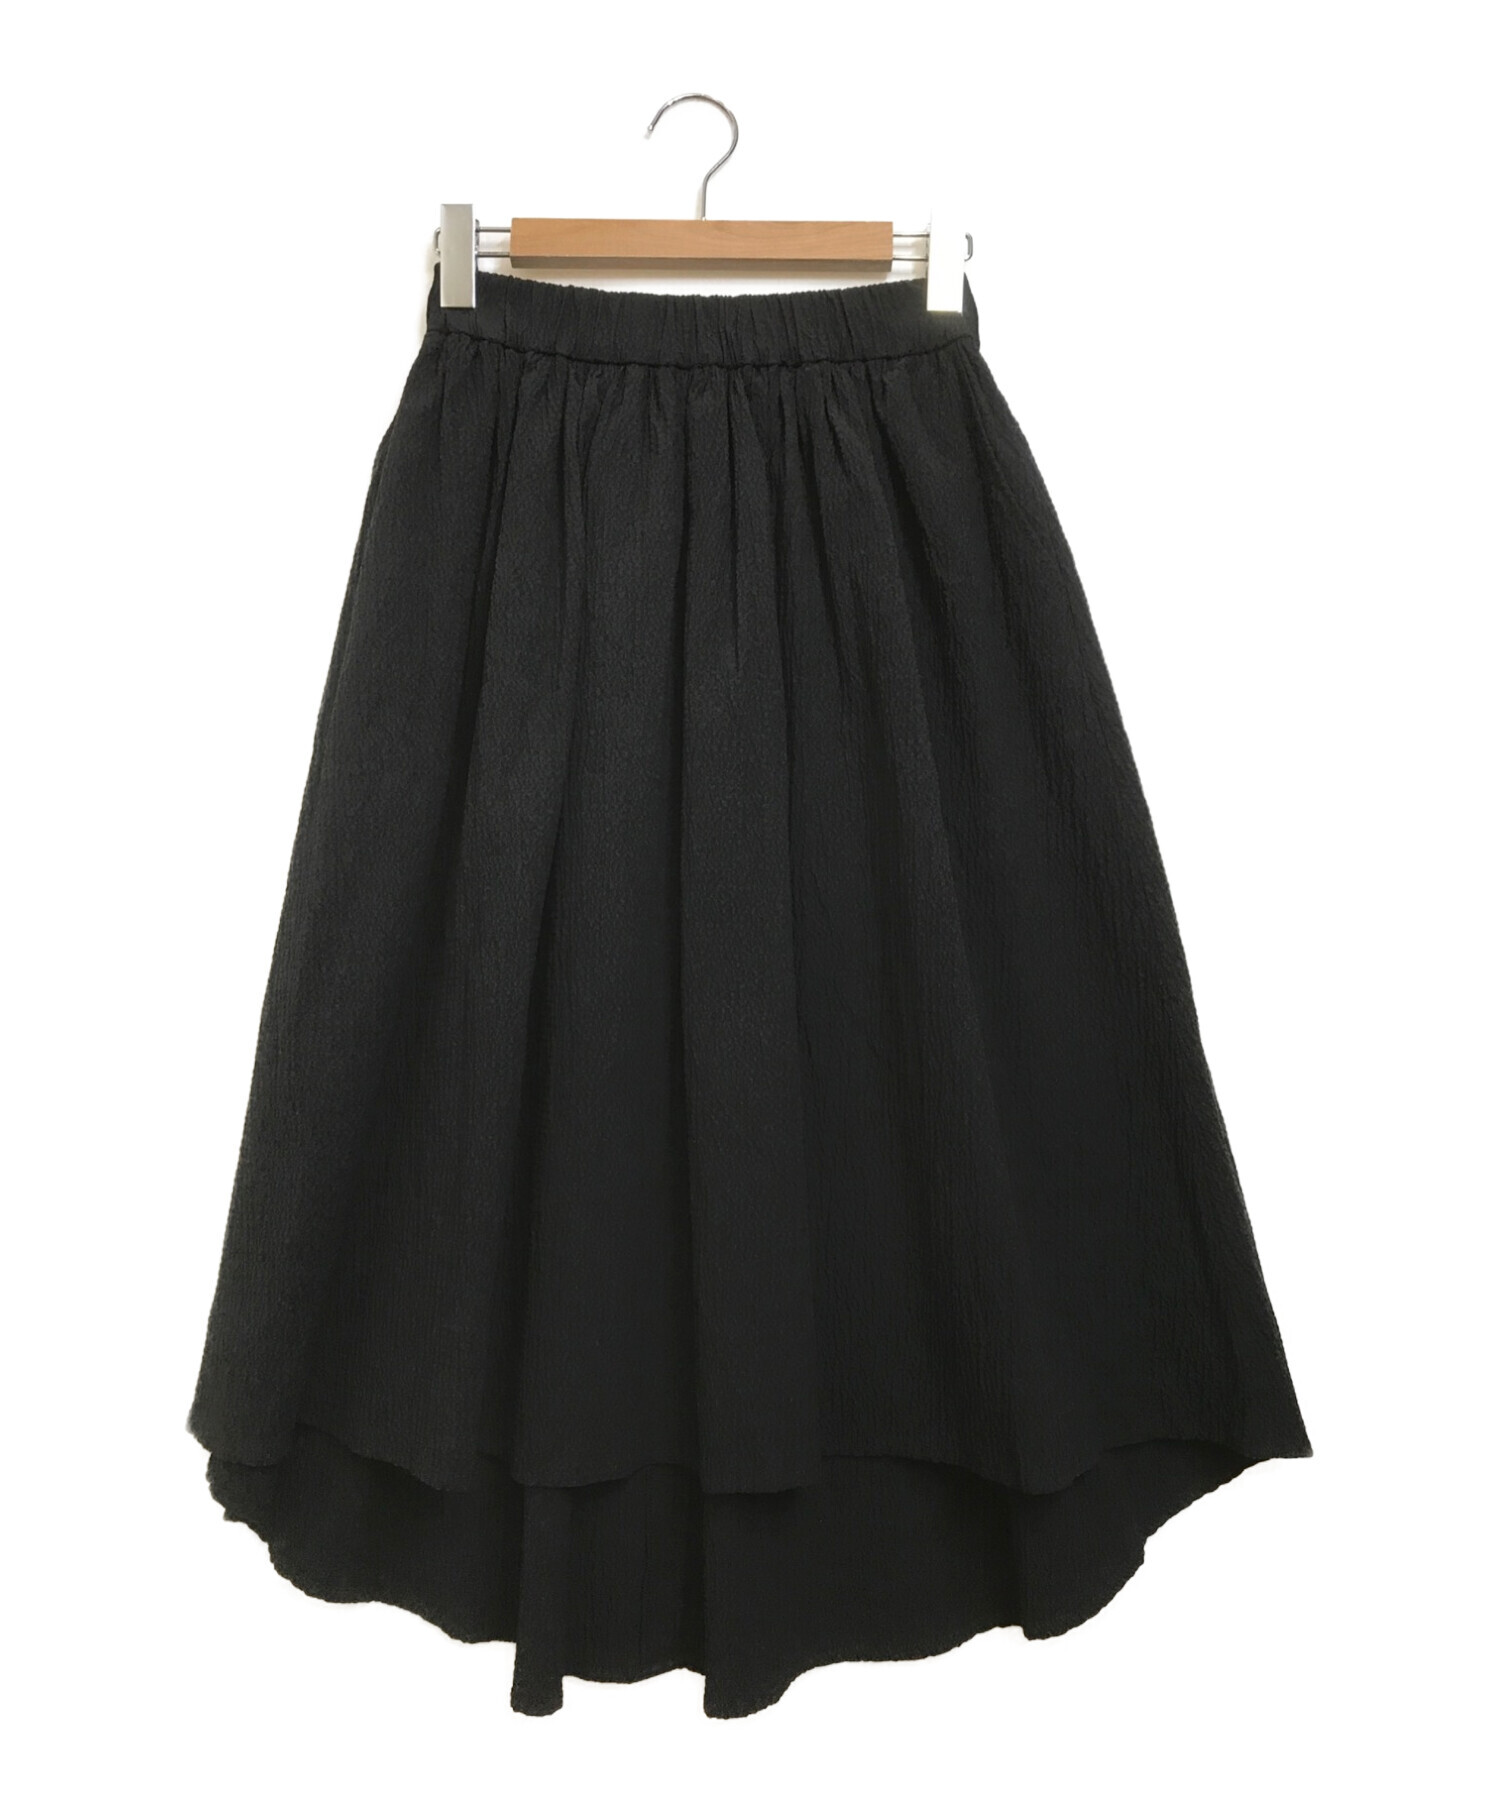 DOUBLE STANDARD CLOTHING (ダブルスタンダードクロージング) BUMPY COTTONスカート ブラック サイズ:36